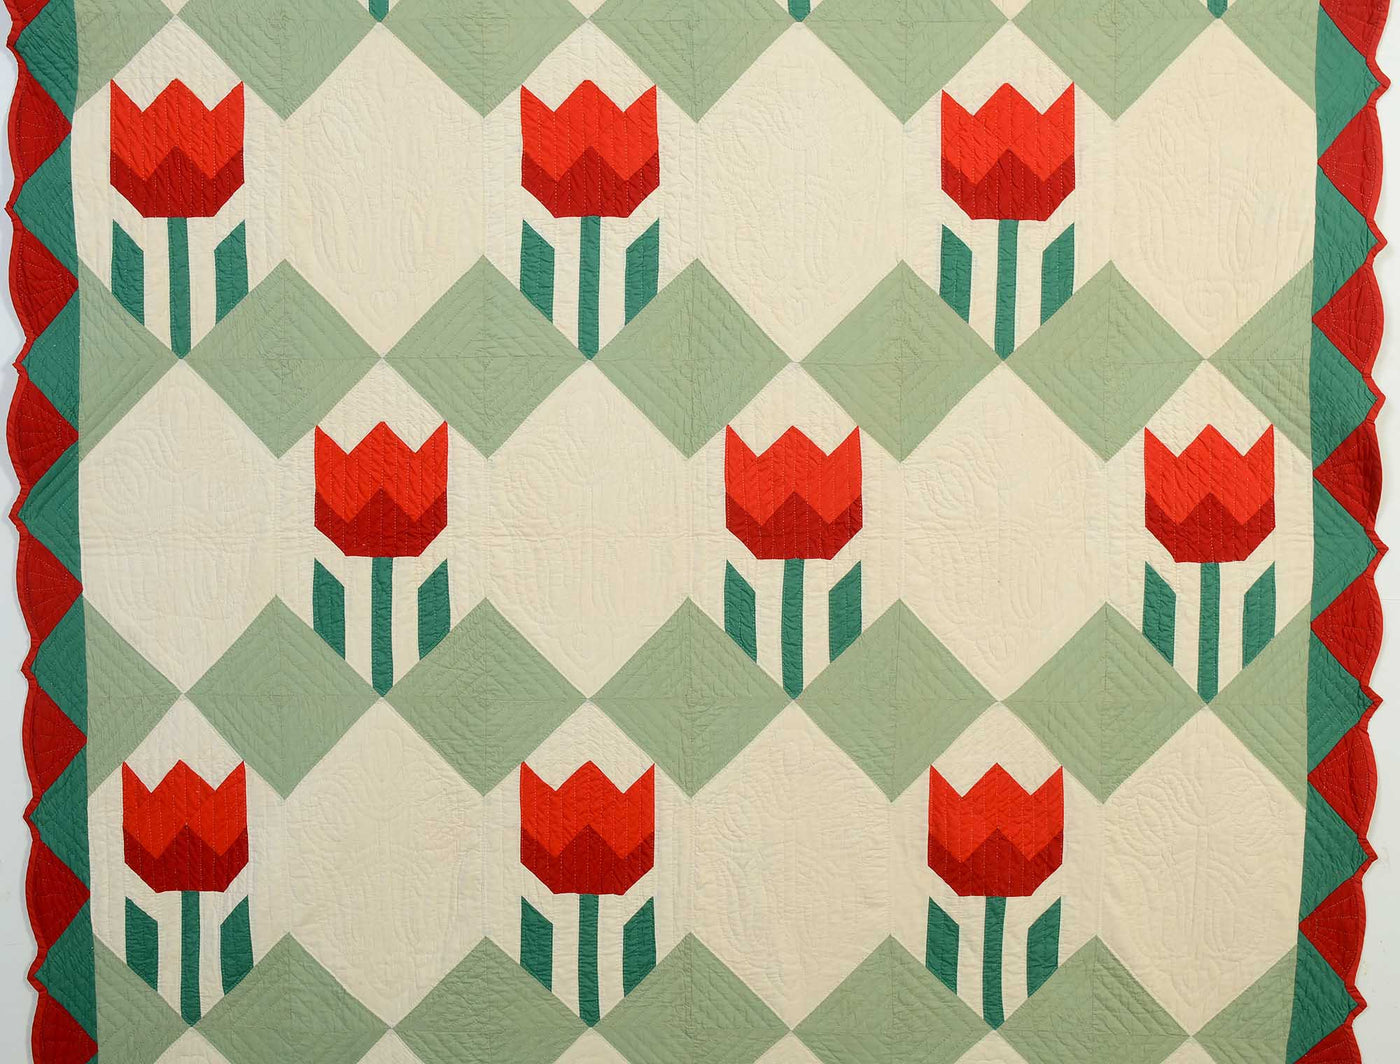 ruby-mckim-tulips-quilt-1404560-detail-1